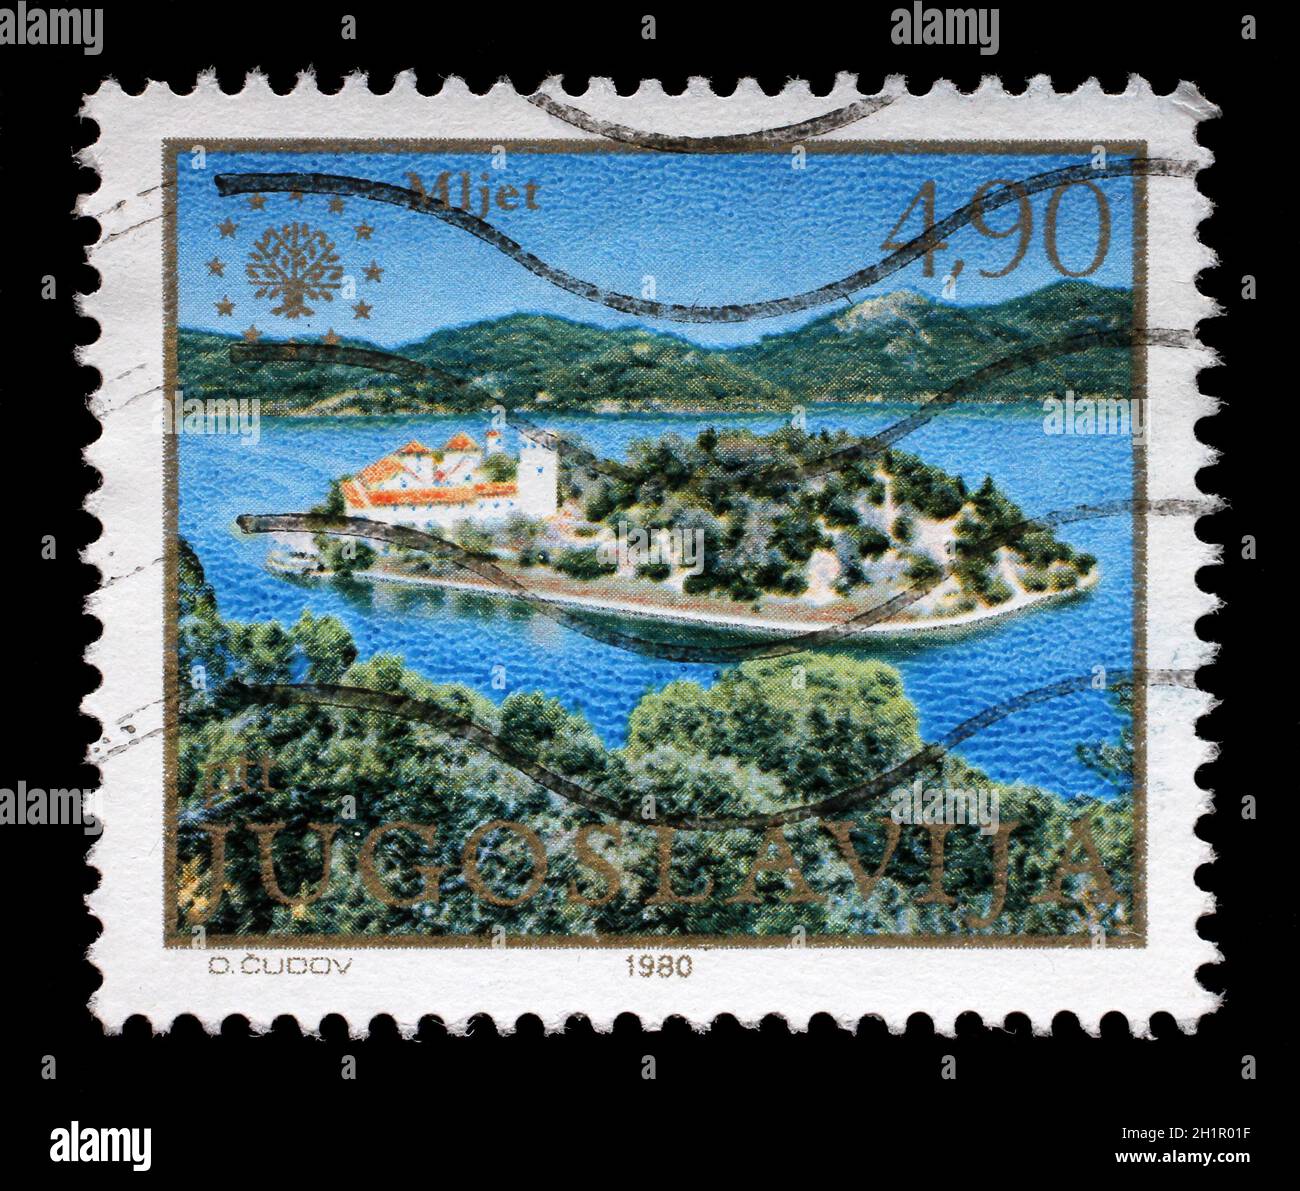 Timbres en Yougoslavie montre l'île de Mljet, Mer Adriatique, la Croatie, vers 1980. Banque D'Images